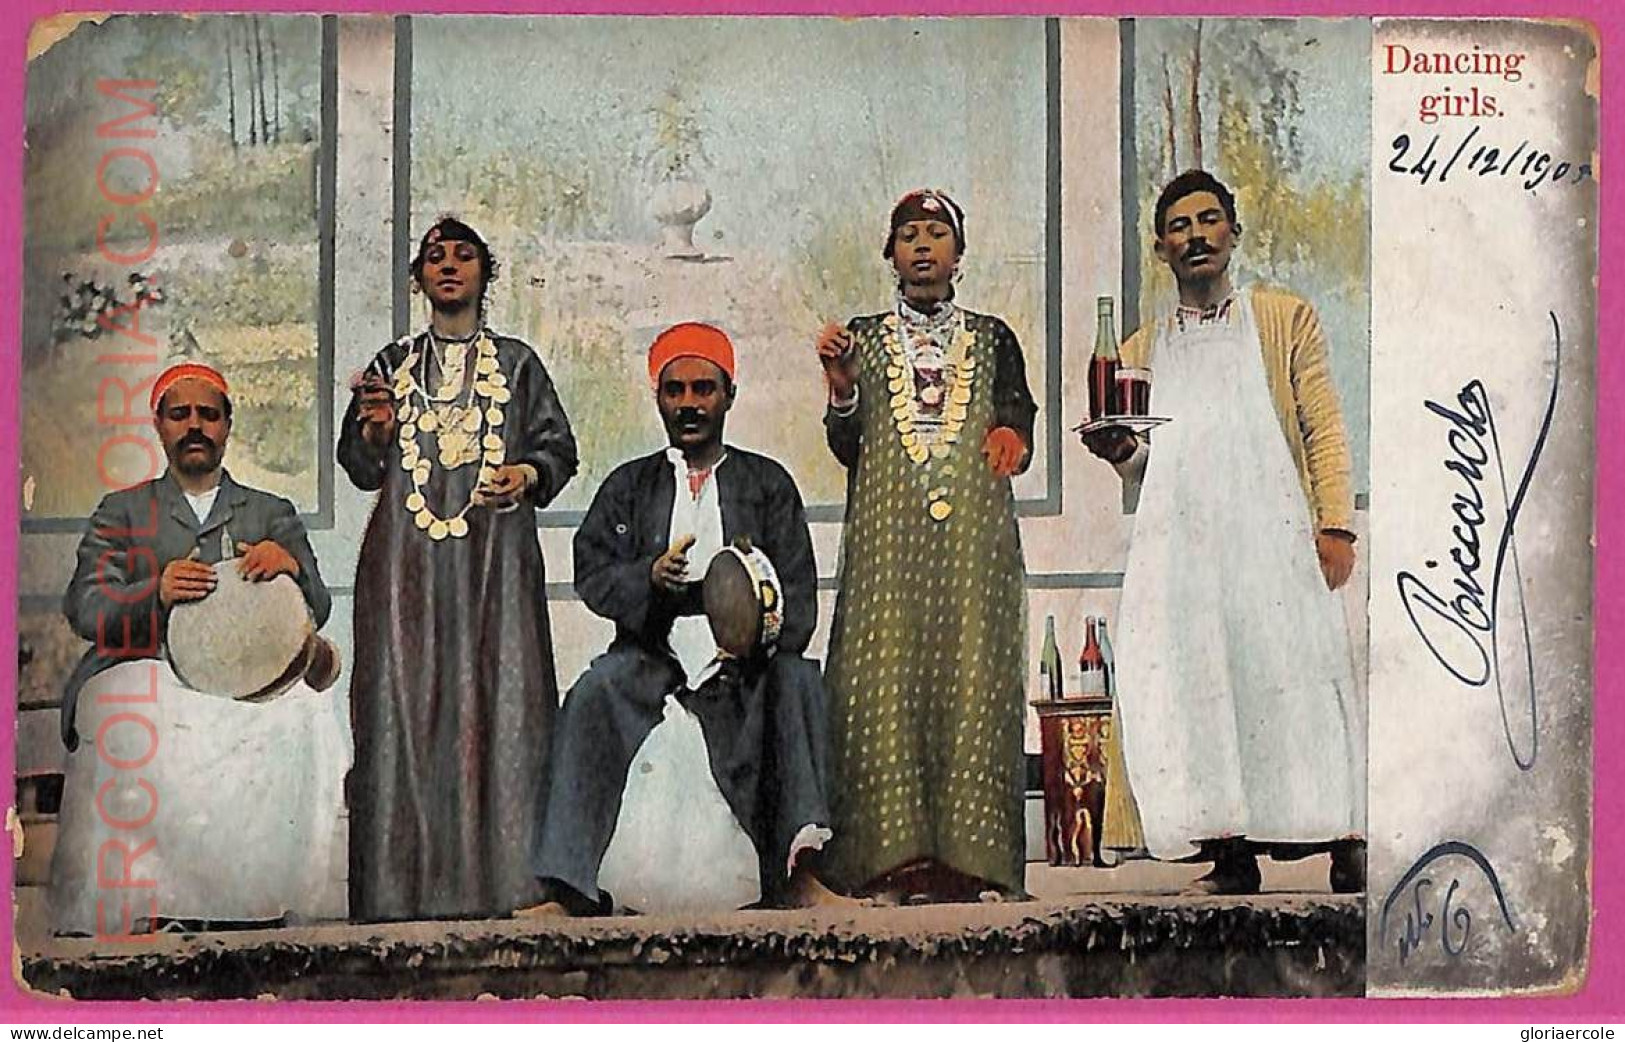 Ag2807 - EGYPT - VINTAGE POSTCARD - Ethnic, Dancing Girls - 1905 - Afrika